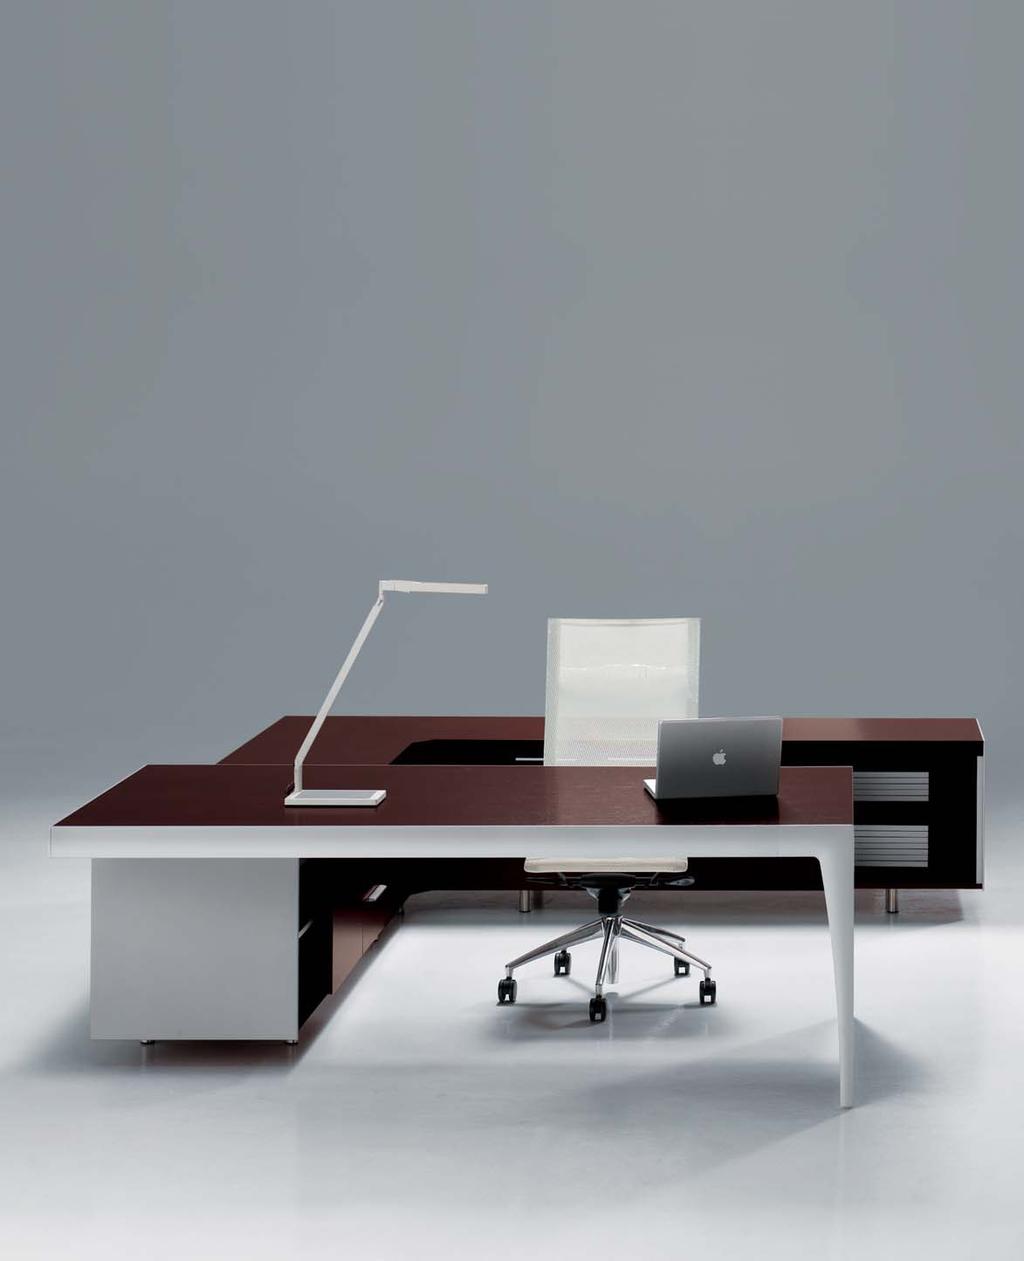 S trutture in color Palissandro rosewood e profili in alluminio caratterizzano i differenti livelli compositivi e funzionali delle scrivanie e dei tavoli riunione.